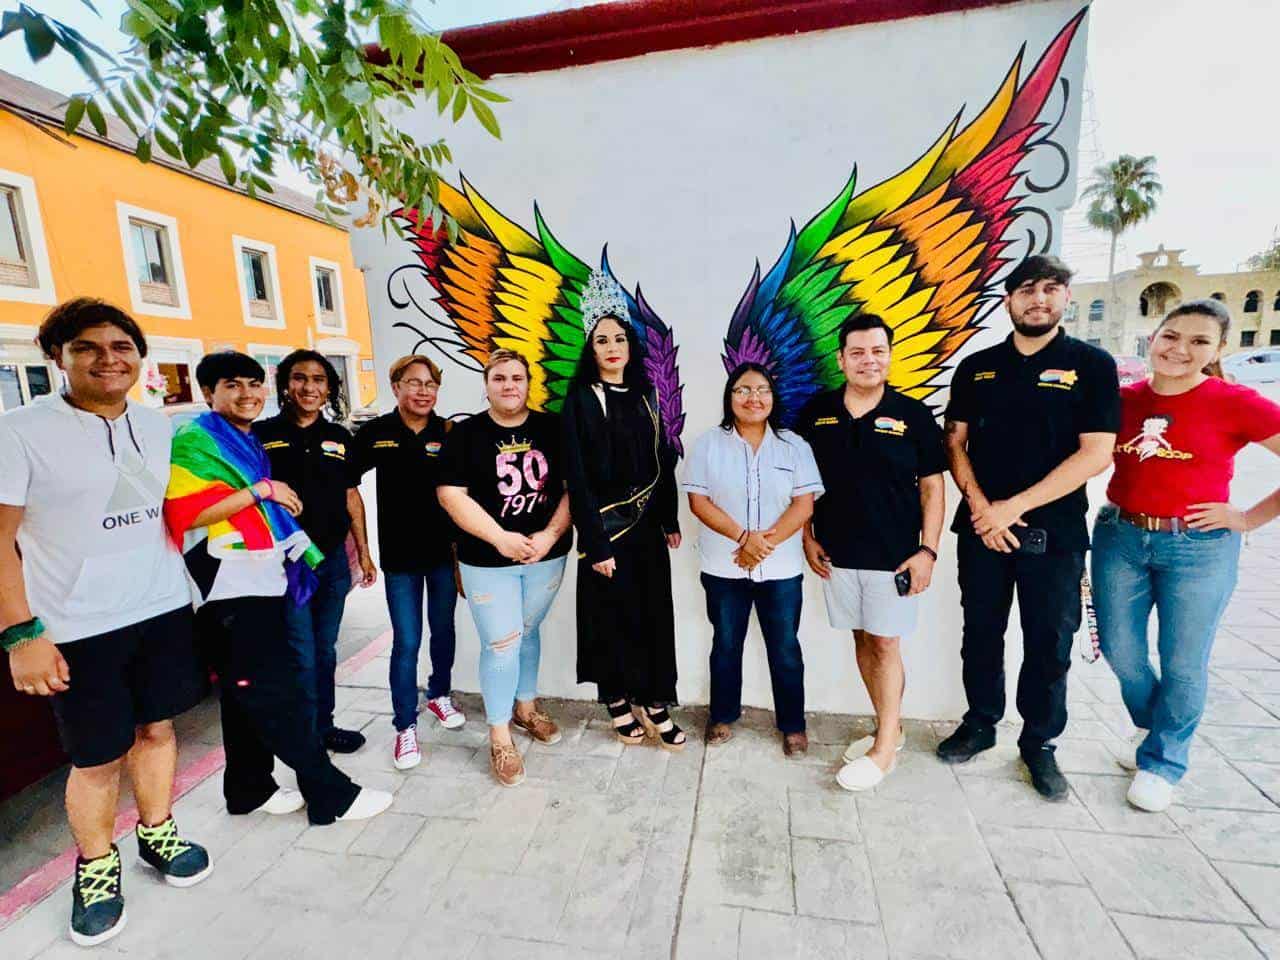 Reinauguran mural de "Alas" en honor al Orgullo LGBTQ+